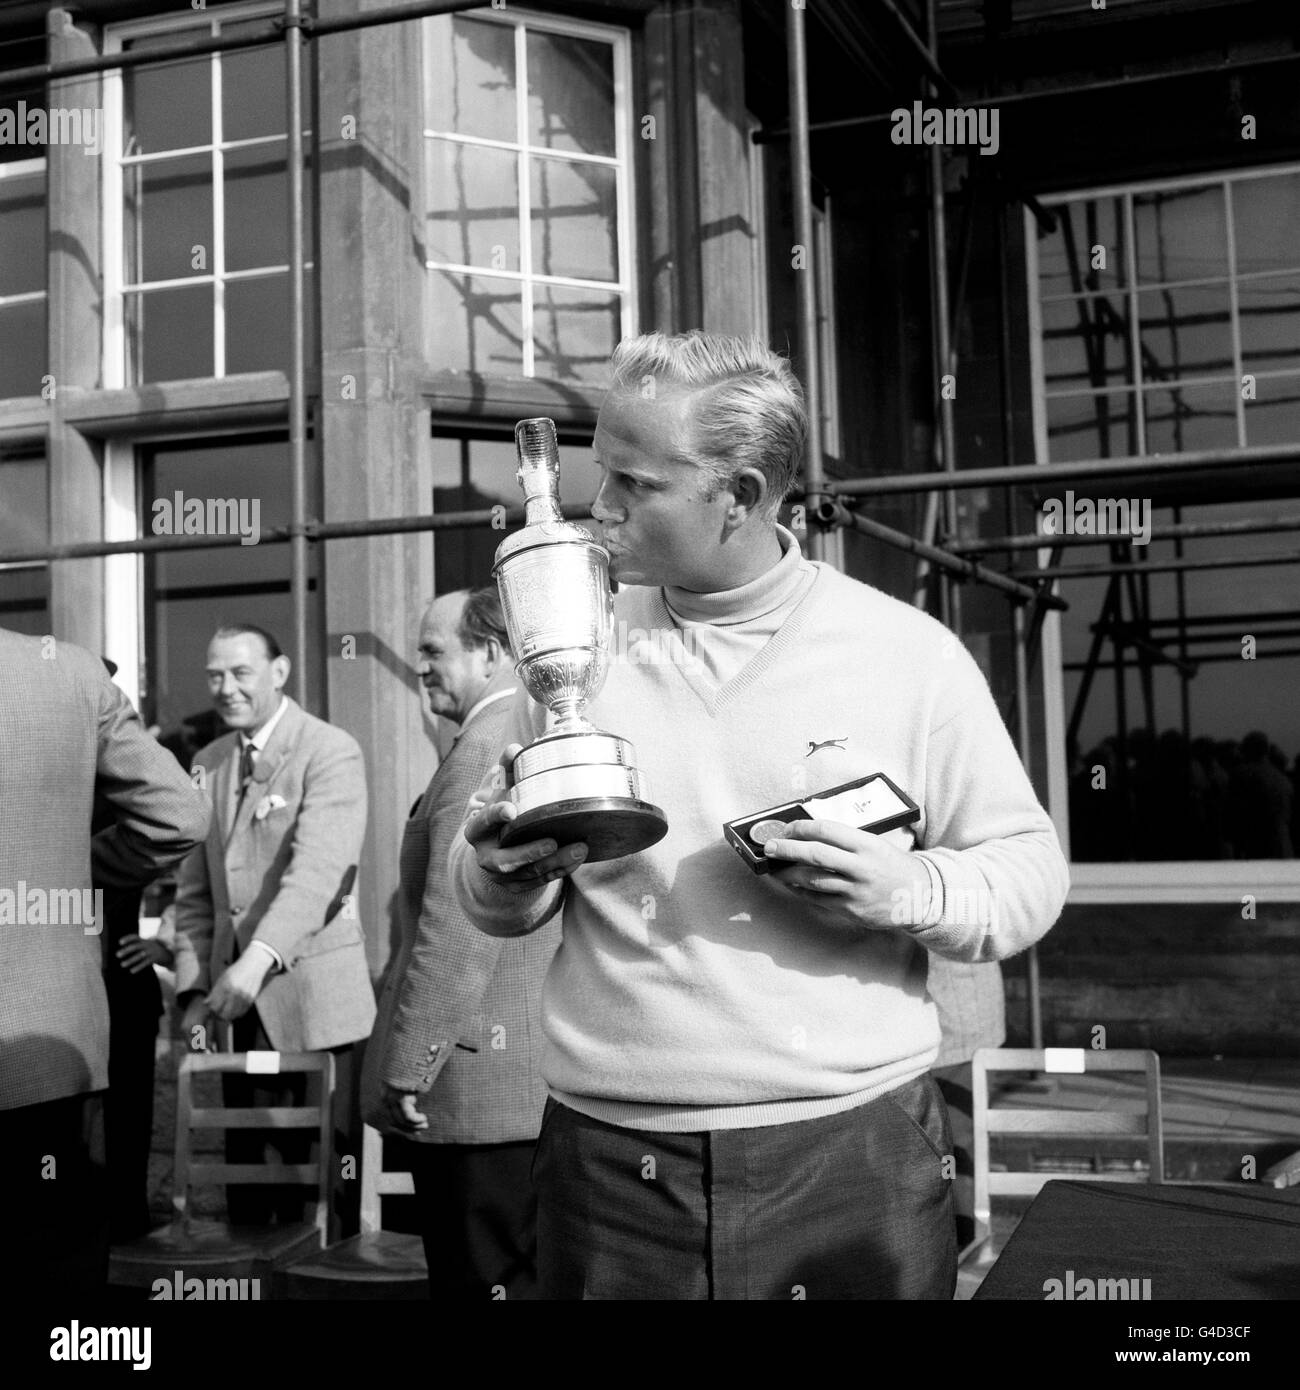 Il nuovo campione aperto Jack Nicklaus di Columbus, Ohio, bacia il trofeo dopo aver vinto il titolo a Muirfield, East Lothian. * ristampato 8/7/98. Nicklaus, che è stato ad ogni Open dal suo debutto a Troon nel 1962, ha annunciato che non suonerà nell'Open della prossima settimana a Birkdale. Foto Stock